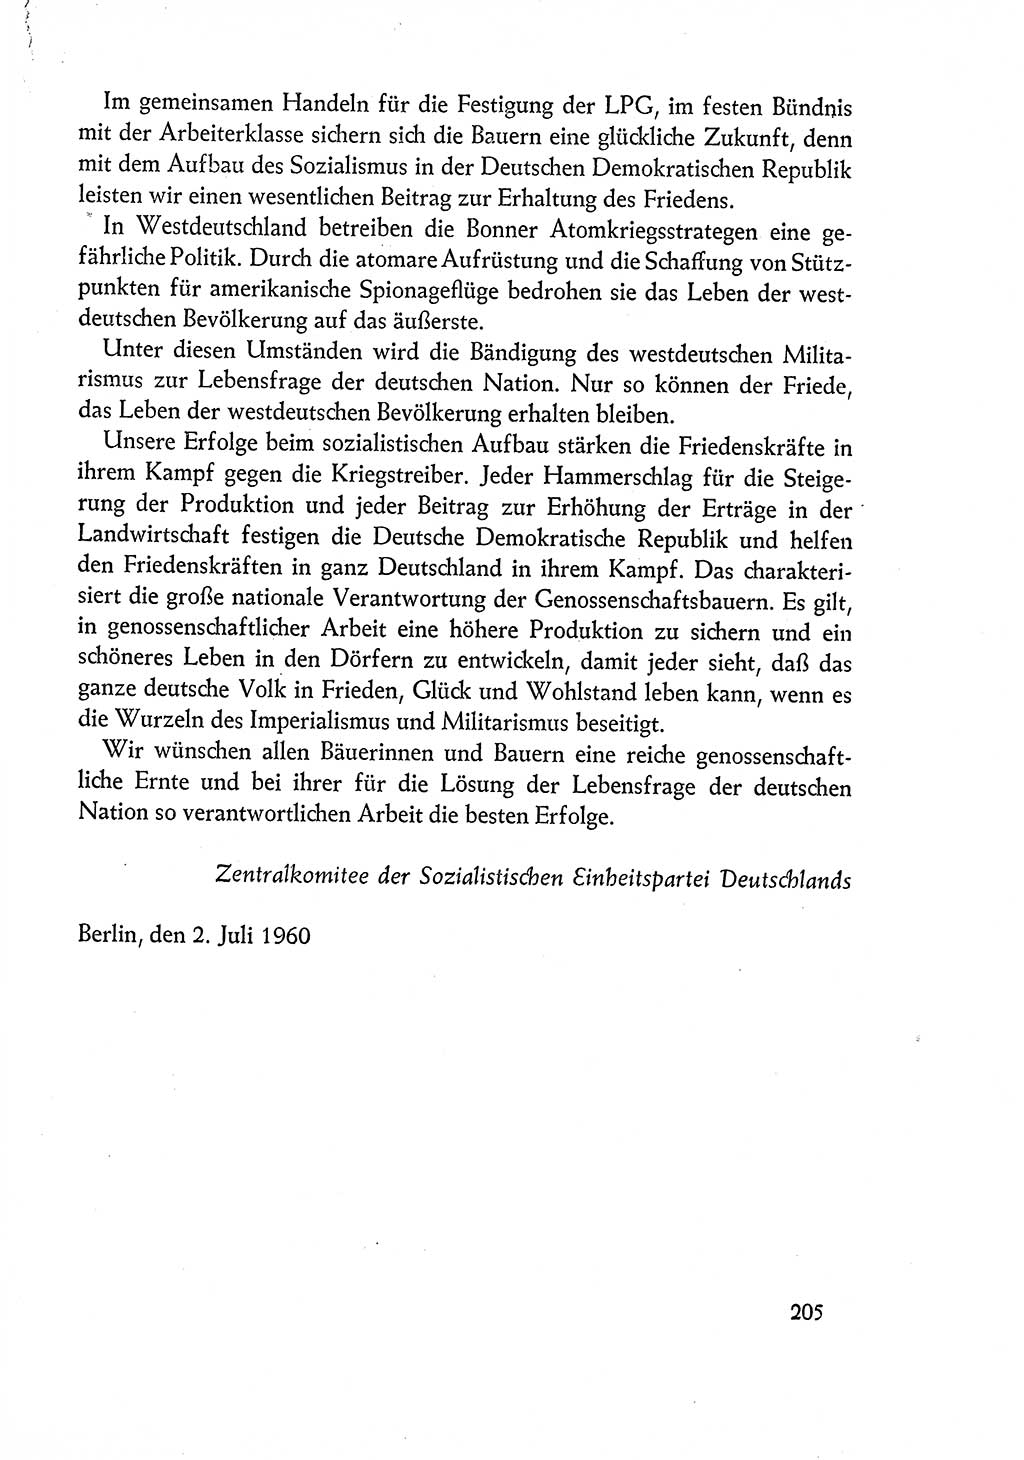 Dokumente der Sozialistischen Einheitspartei Deutschlands (SED) [Deutsche Demokratische Republik (DDR)] 1960-1961, Seite 205 (Dok. SED DDR 1960-1961, S. 205)